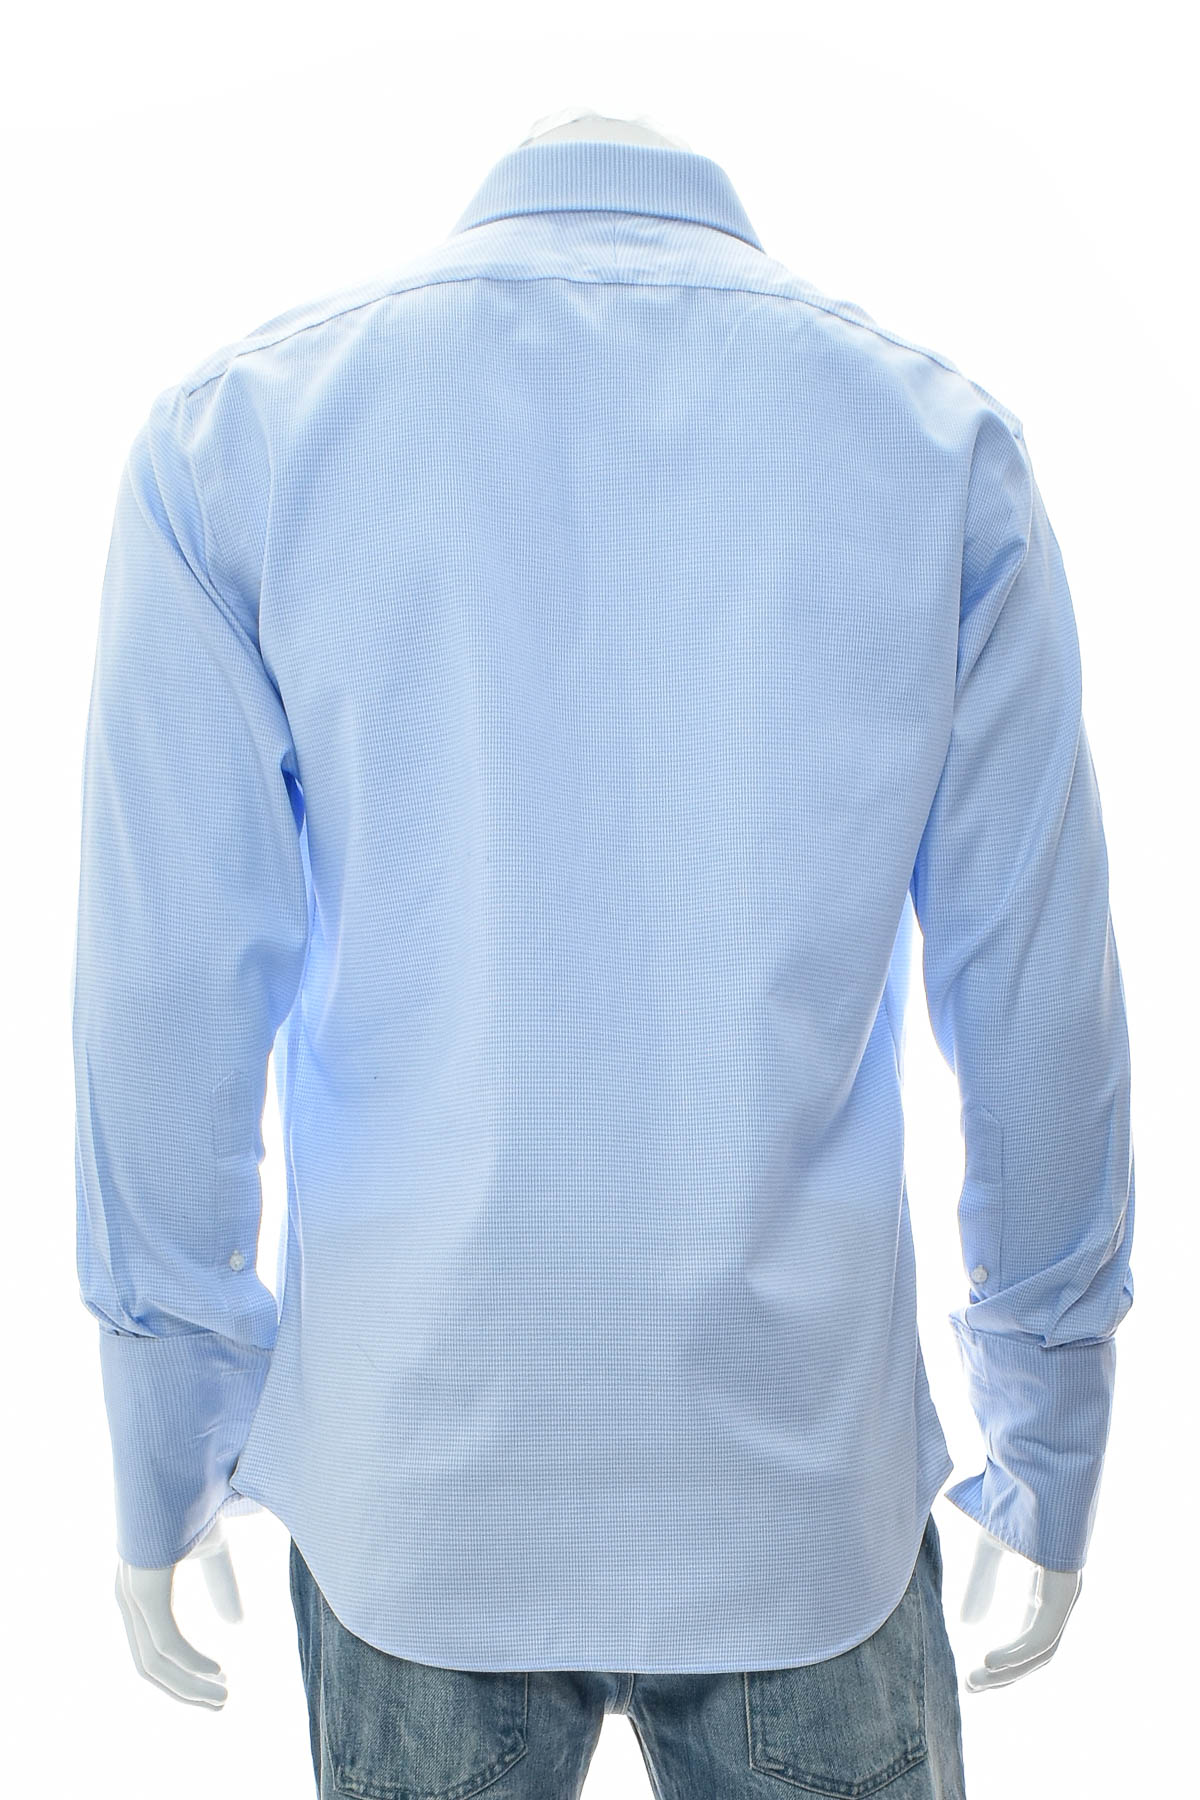 Men's shirt - TM Lewin - 1